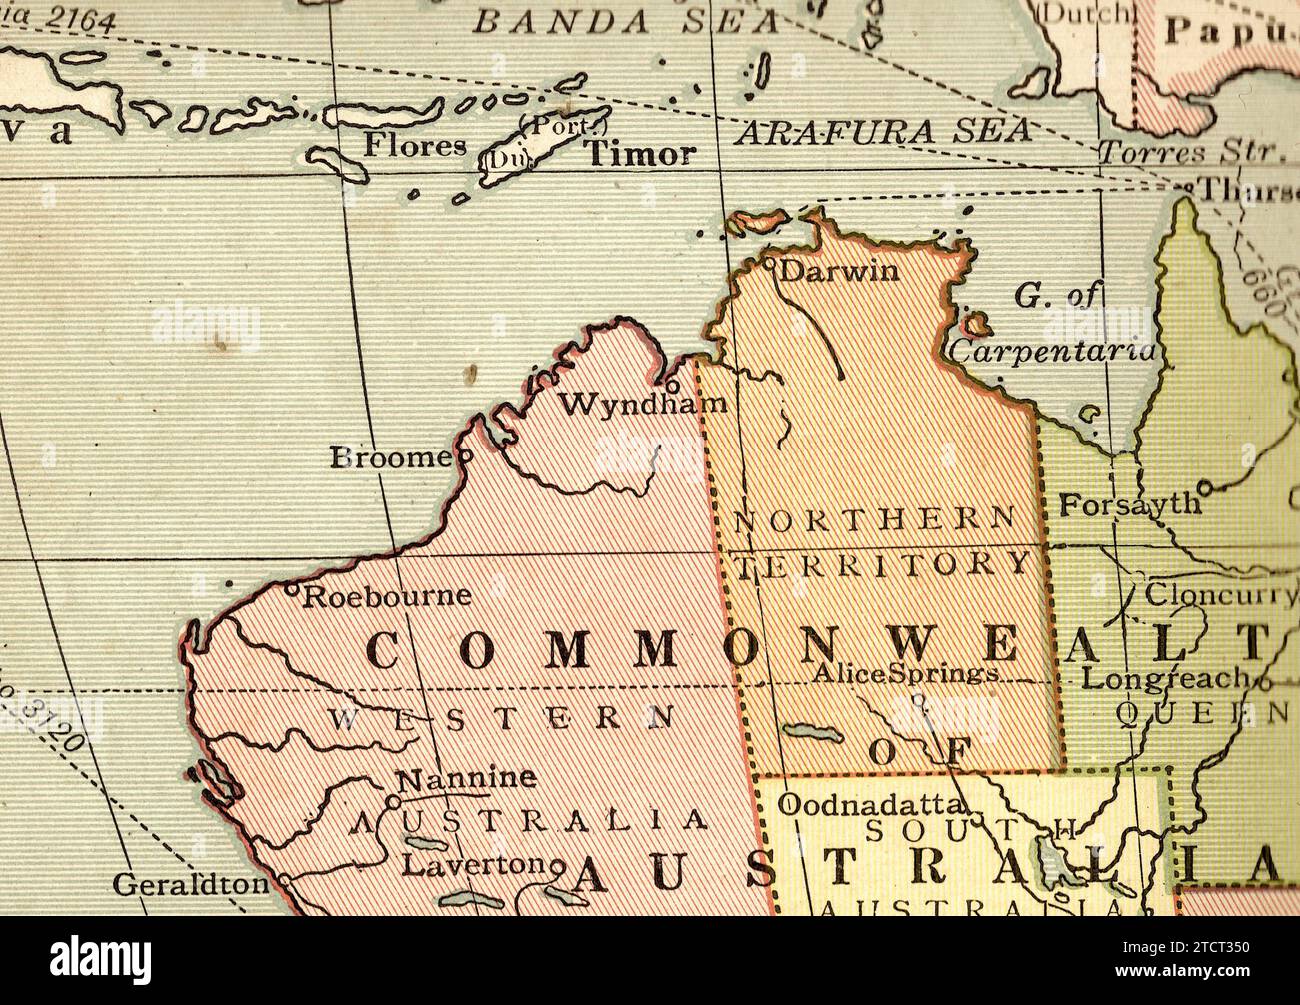 Una mappa politica d'epoca/antica in Australia, Giava e Timor. Foto Stock